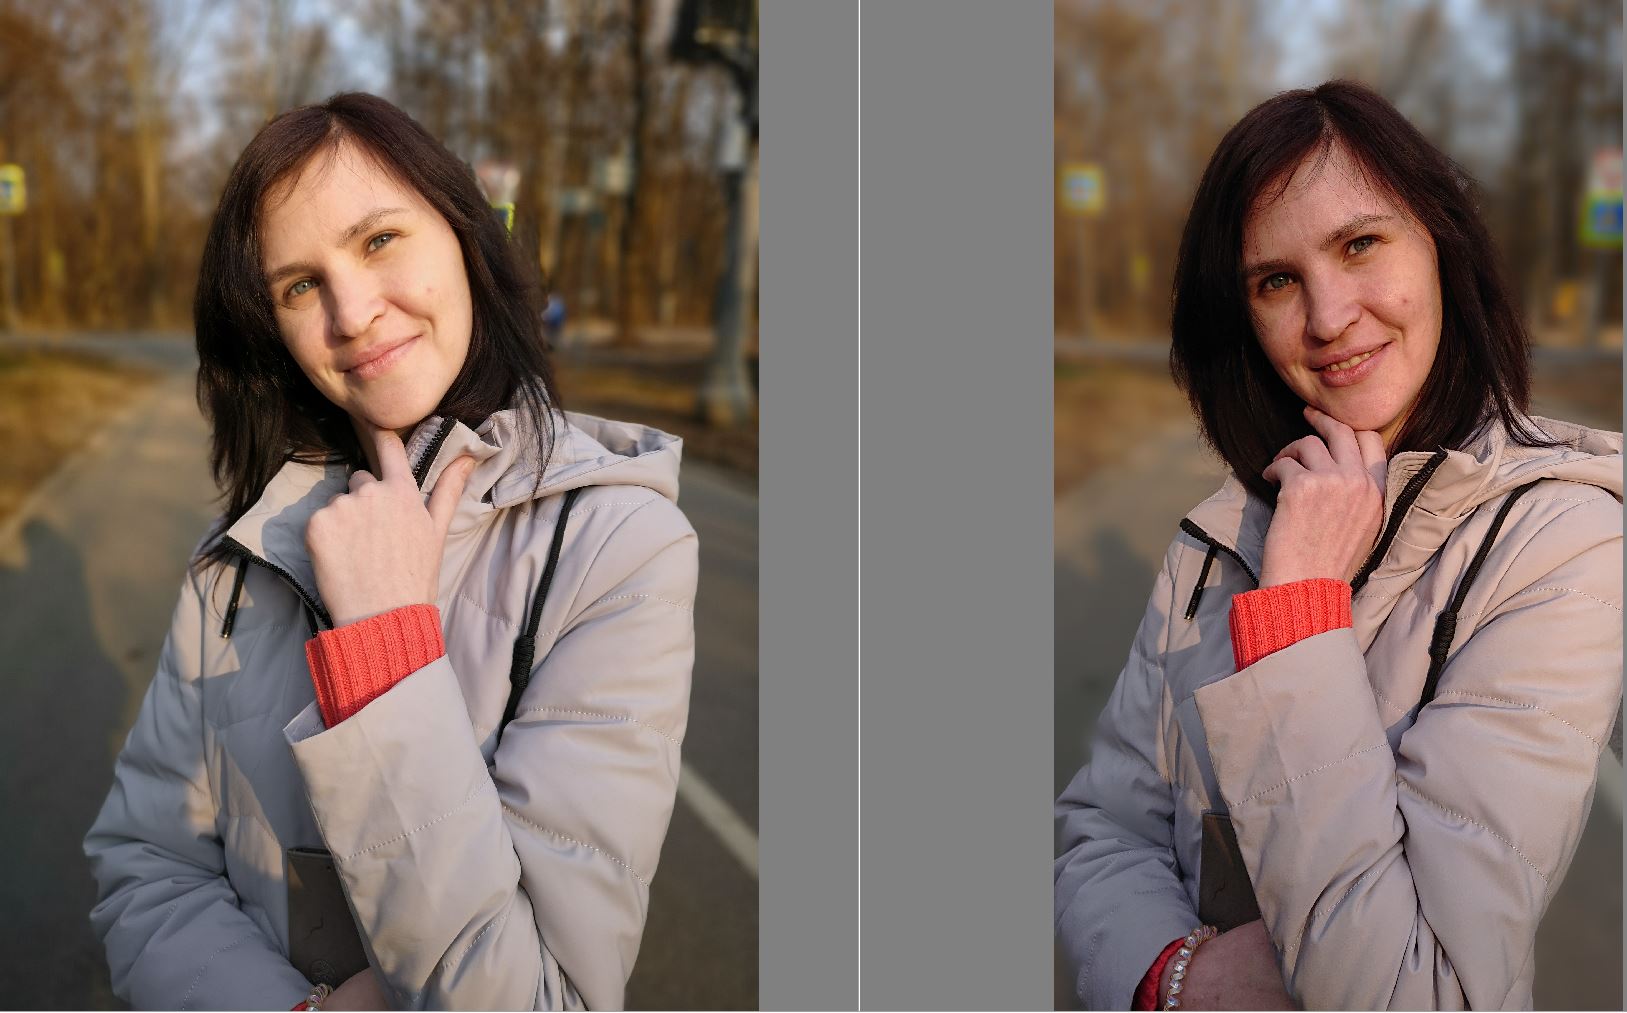 Сравнение качества фотографий, сделанных на телефоны с различной конфигурацией сенсоров - 38